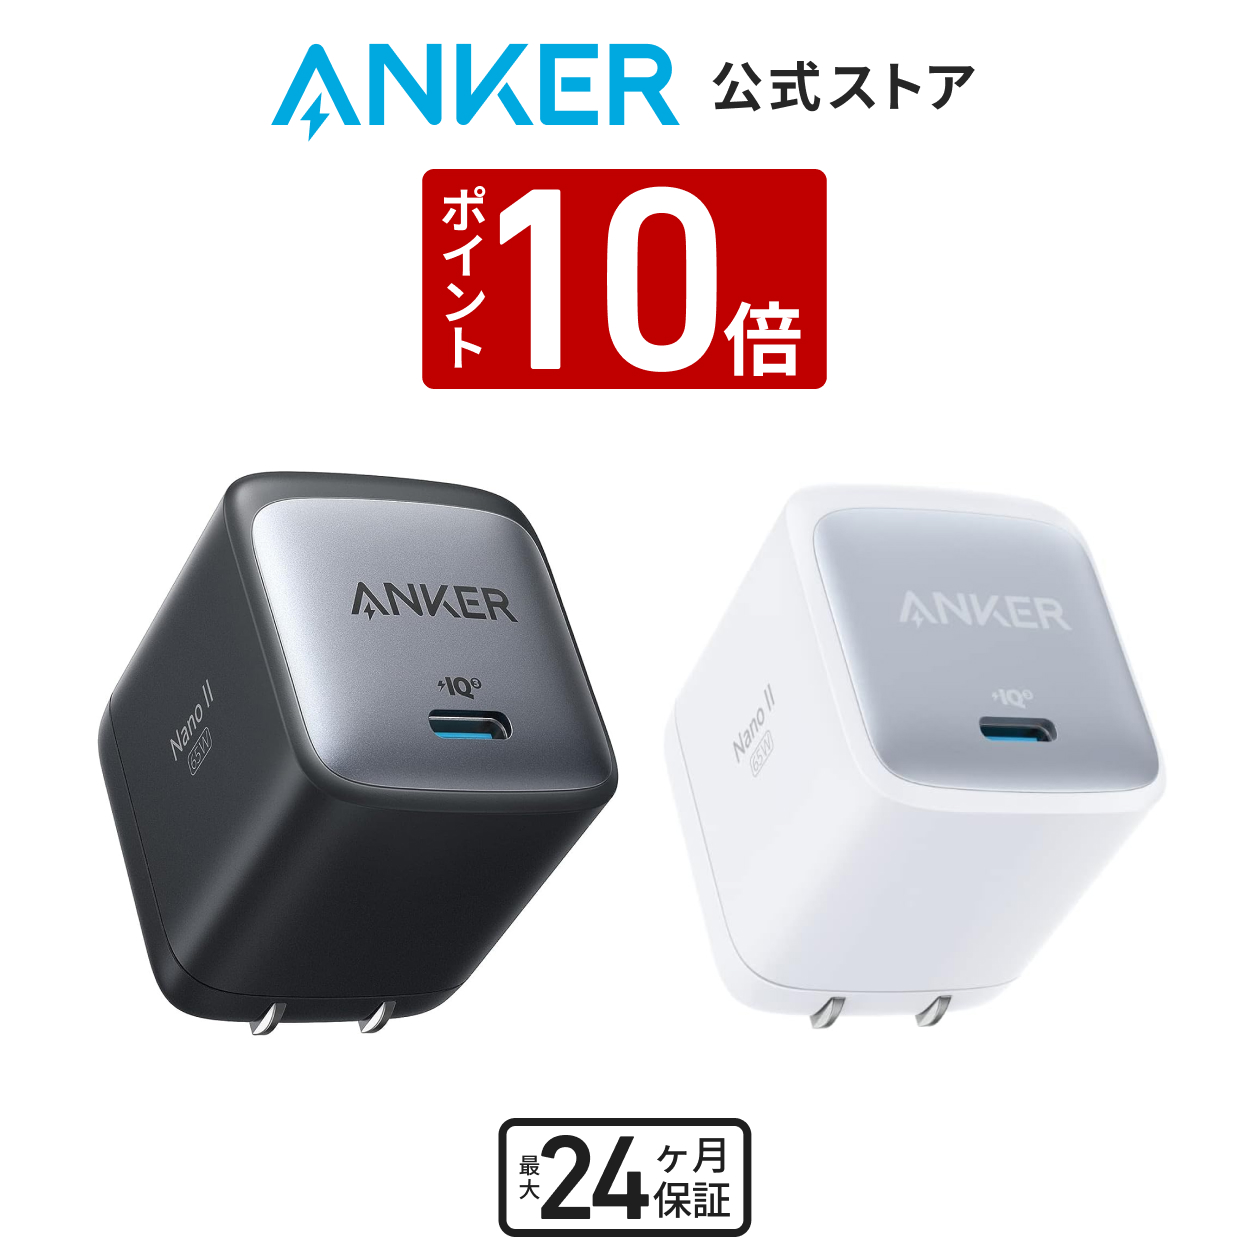 【楽天市場】【あす楽対応】Anker USB急速充電器 65W ピカチュウ 